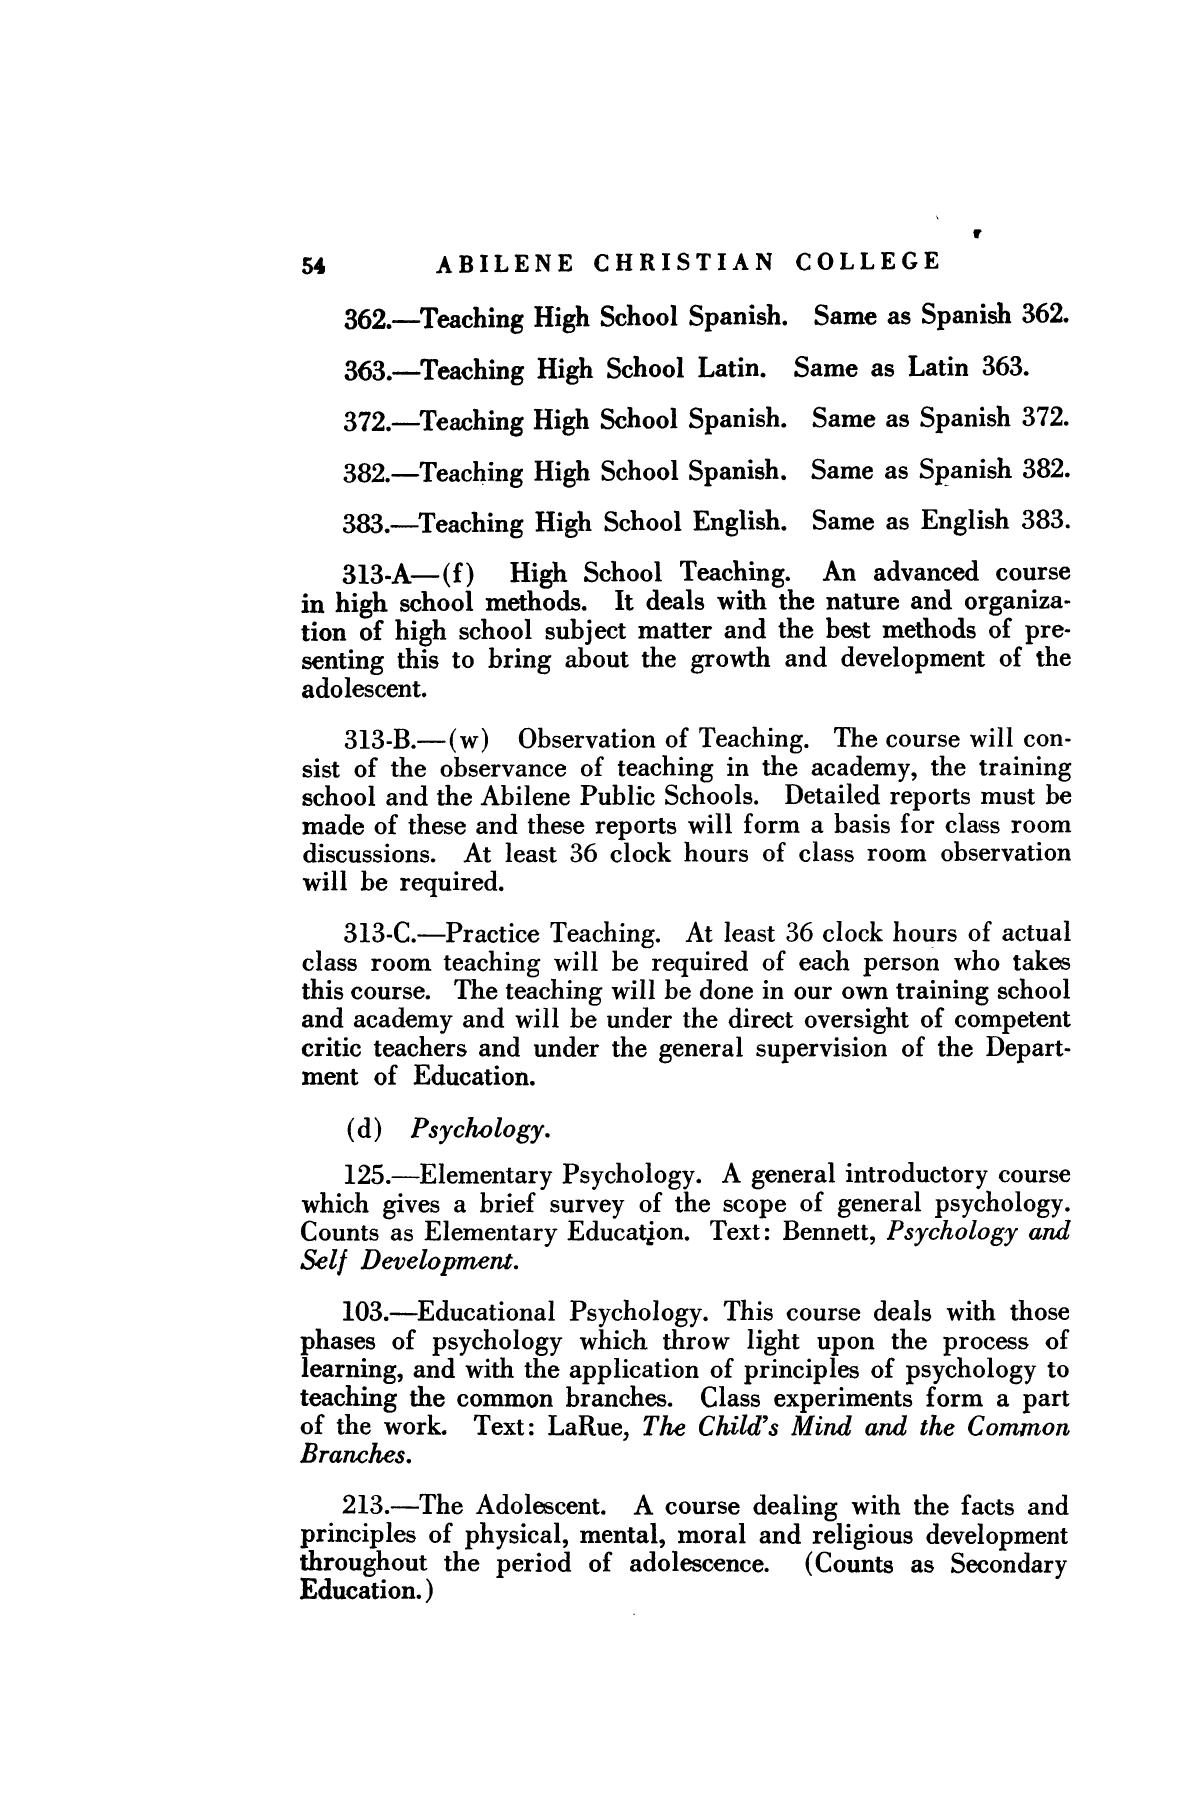 Catalog of Abilene Christian College, 1926-1927
                                                
                                                    54
                                                